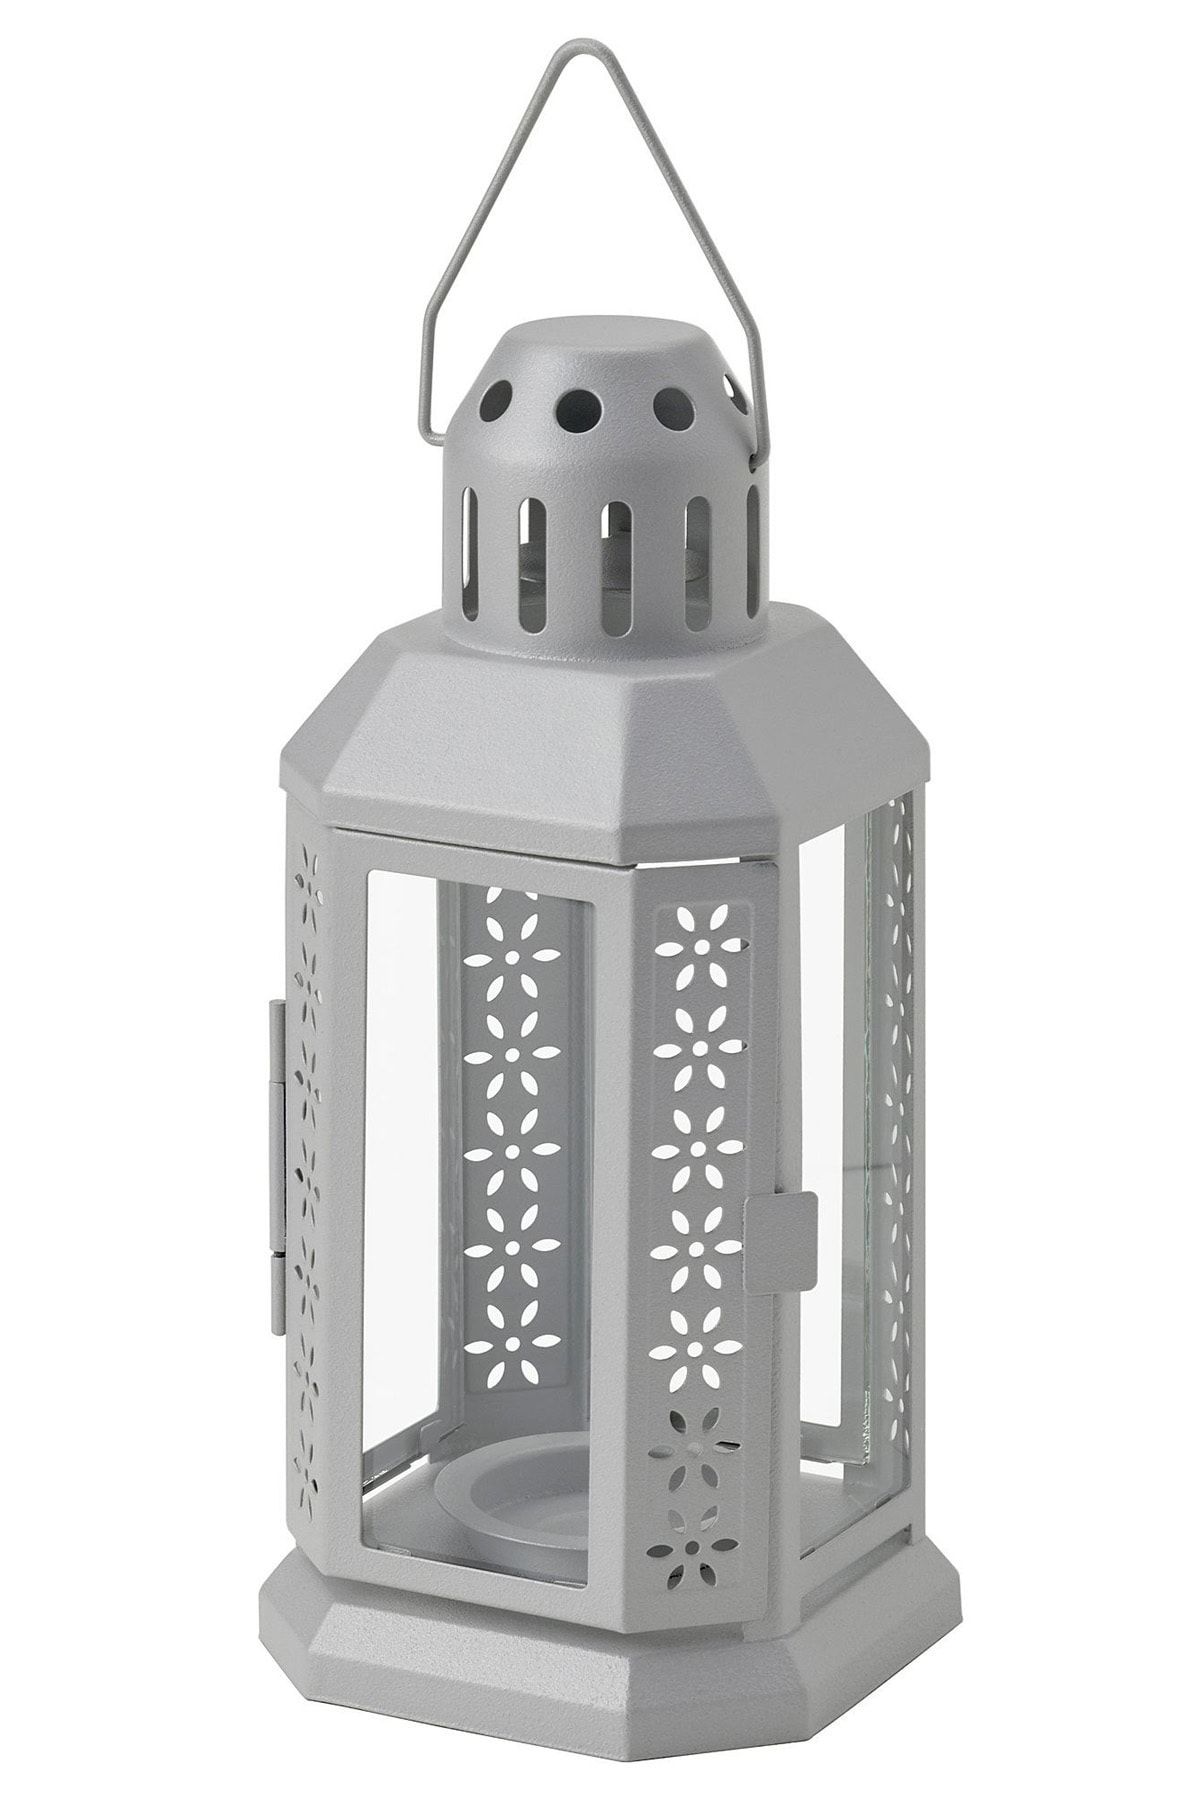 Binbirreyon Metal Mum Feneri Şamdan Tealight Mumluk 22cm Gri Ma030